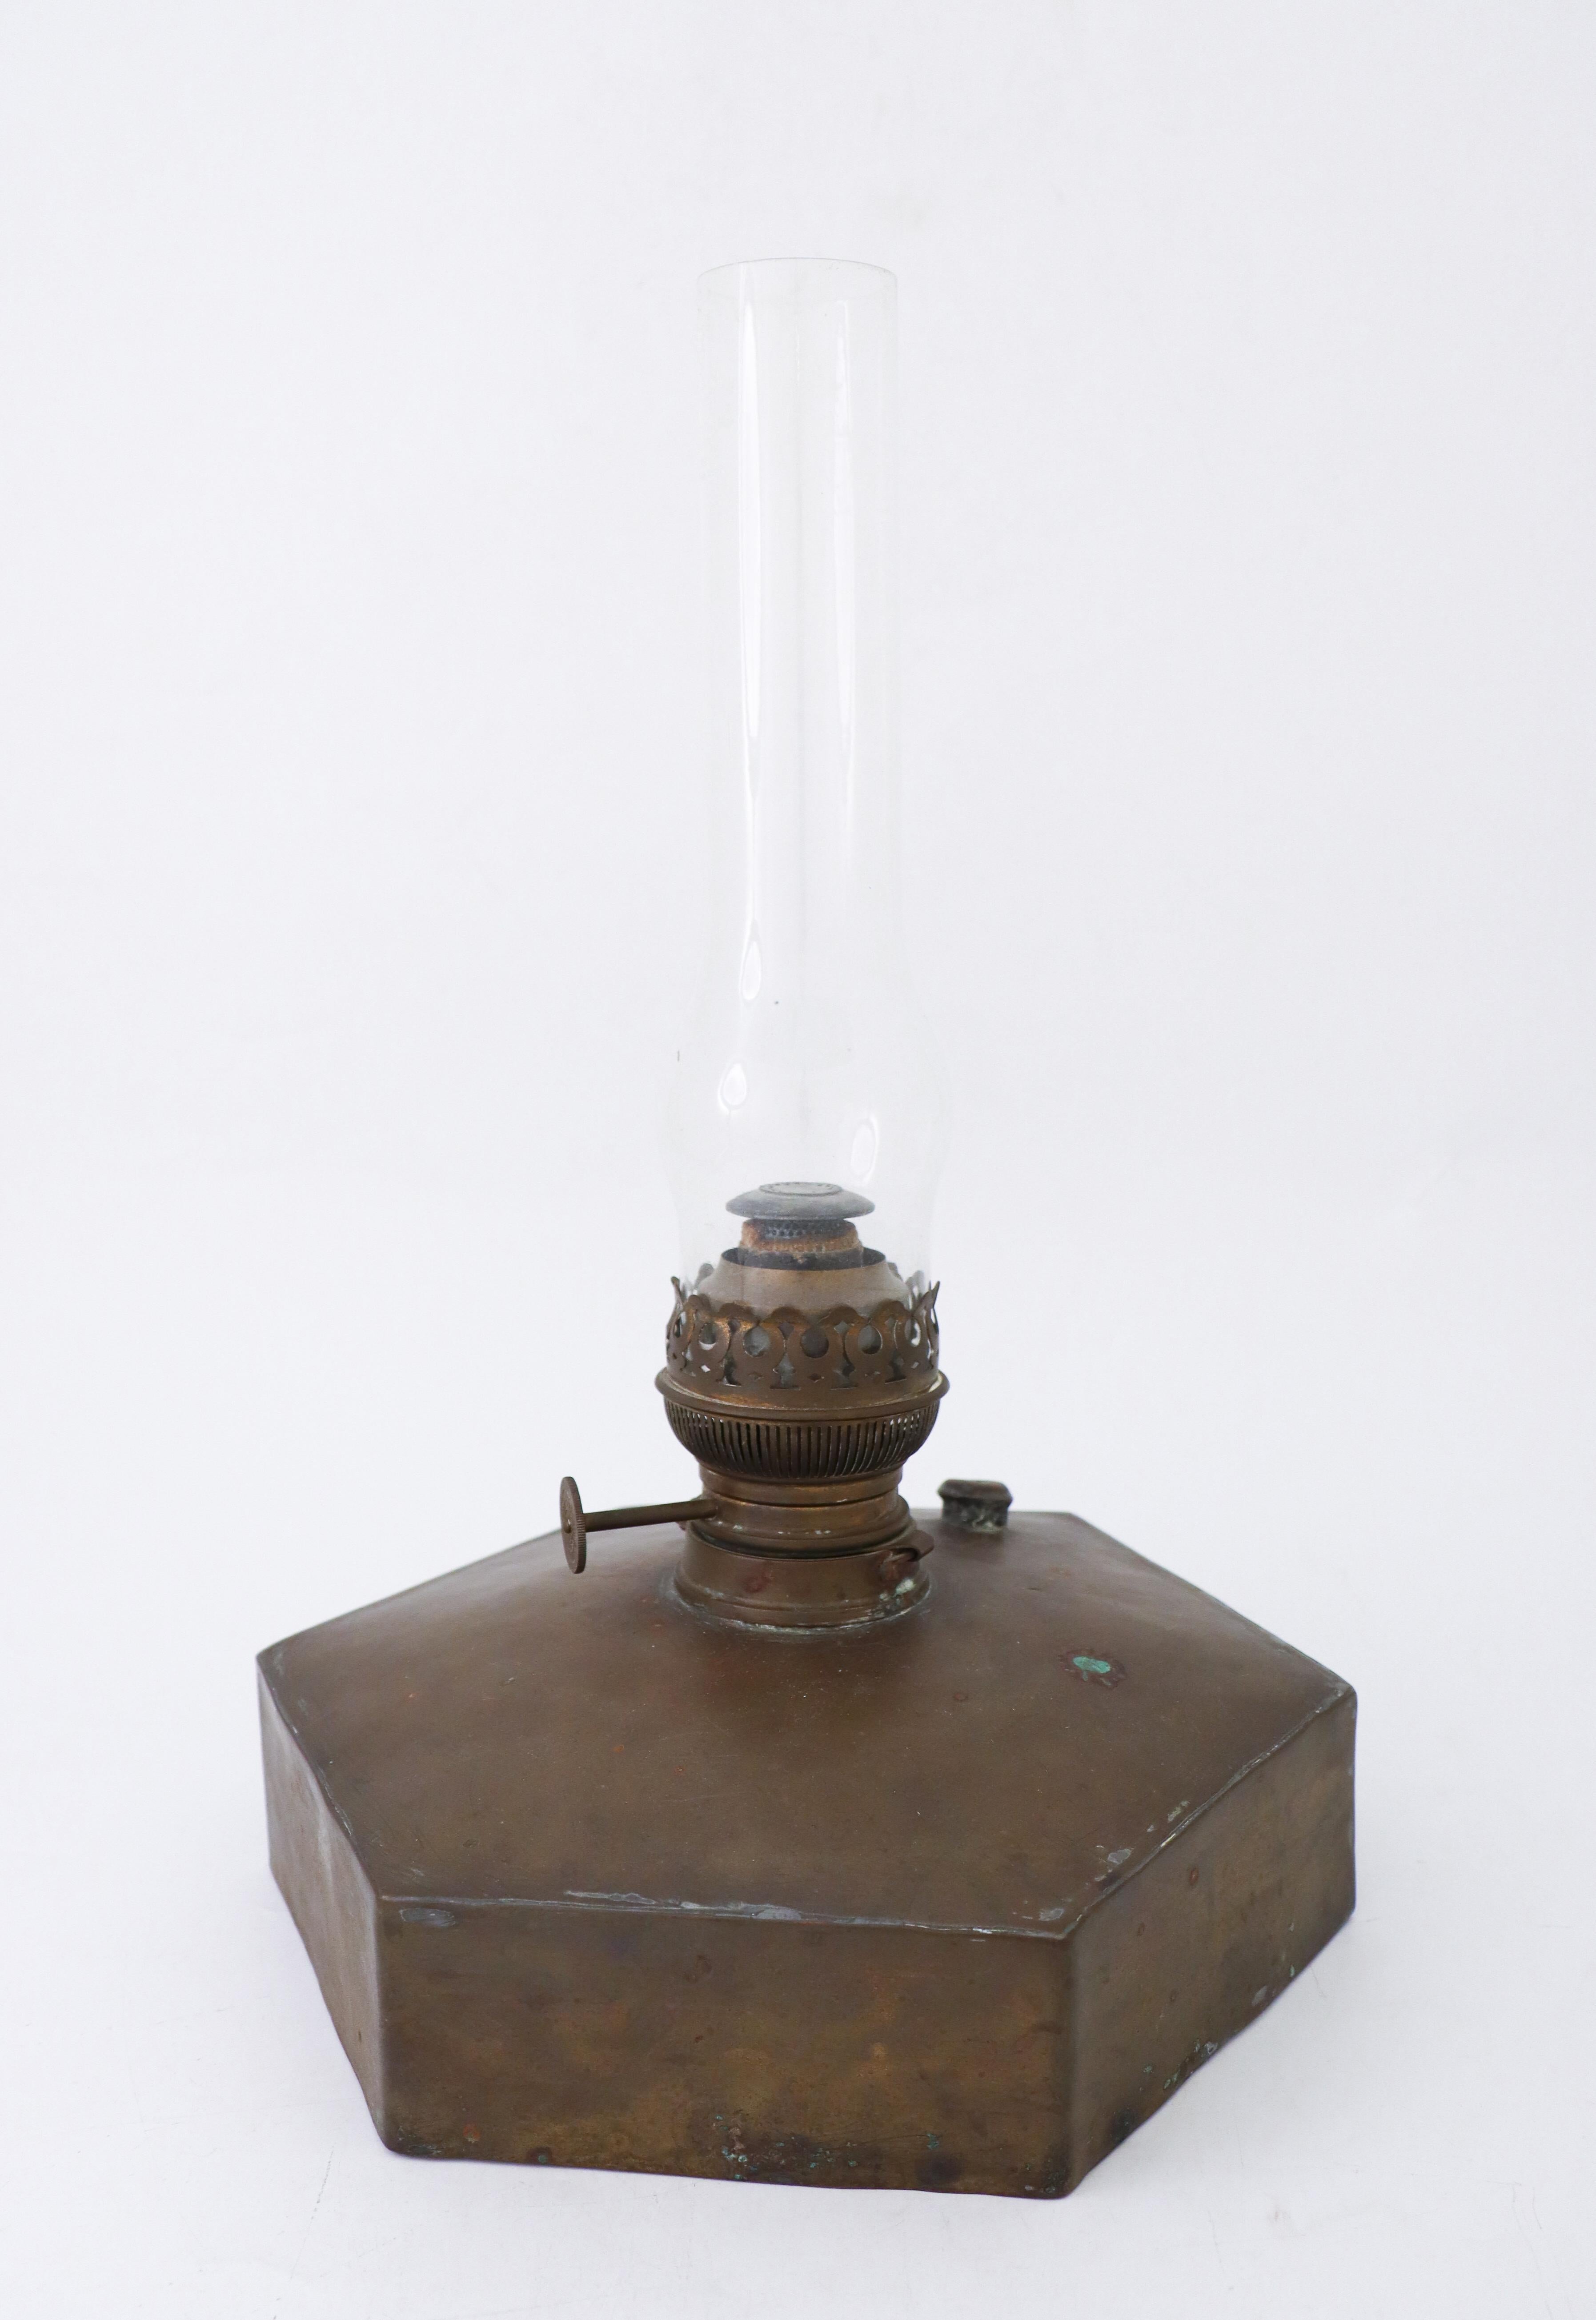 Eine Kerosinlampe aus Messing, wahrscheinlich aus dem späten 19. Jahrhundert. Sie ist 41 cm hoch (einschließlich Glas) und hat einen Durchmesser von 29 cm. Es ist in sehr gutem Zustand, abgesehen von einigen kleinen Spuren im Messing.